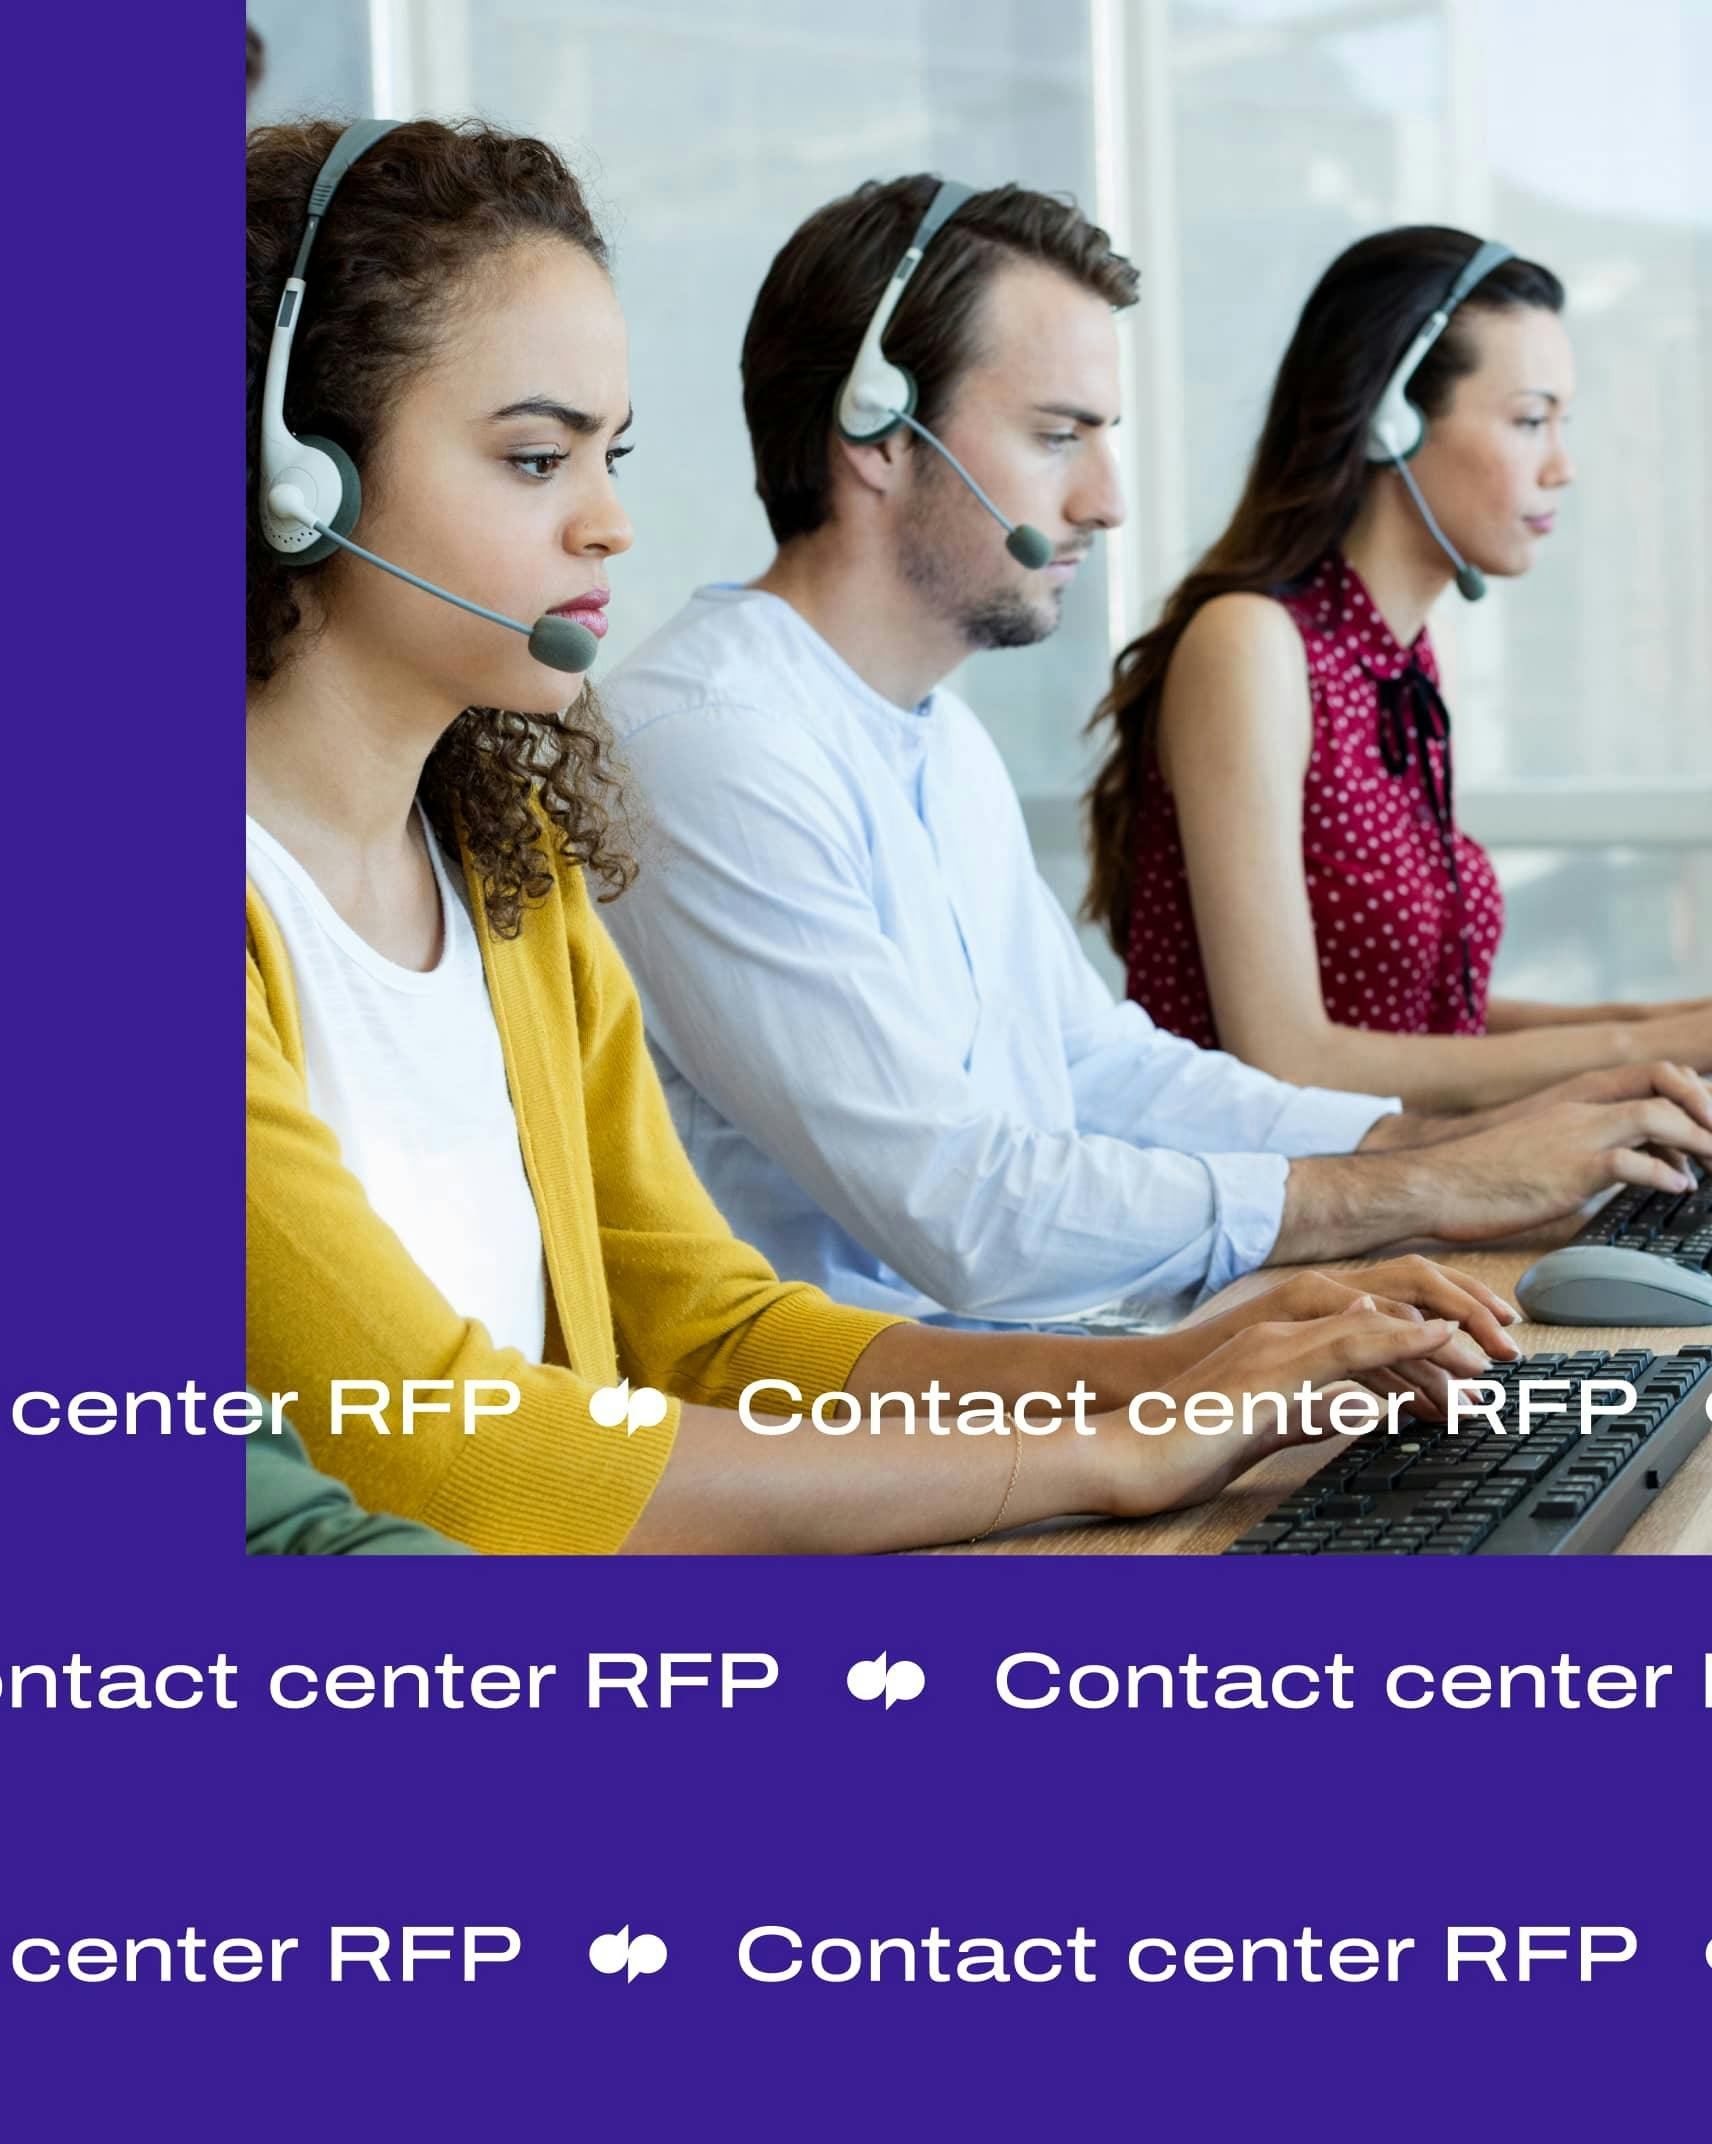 Contact center RFP